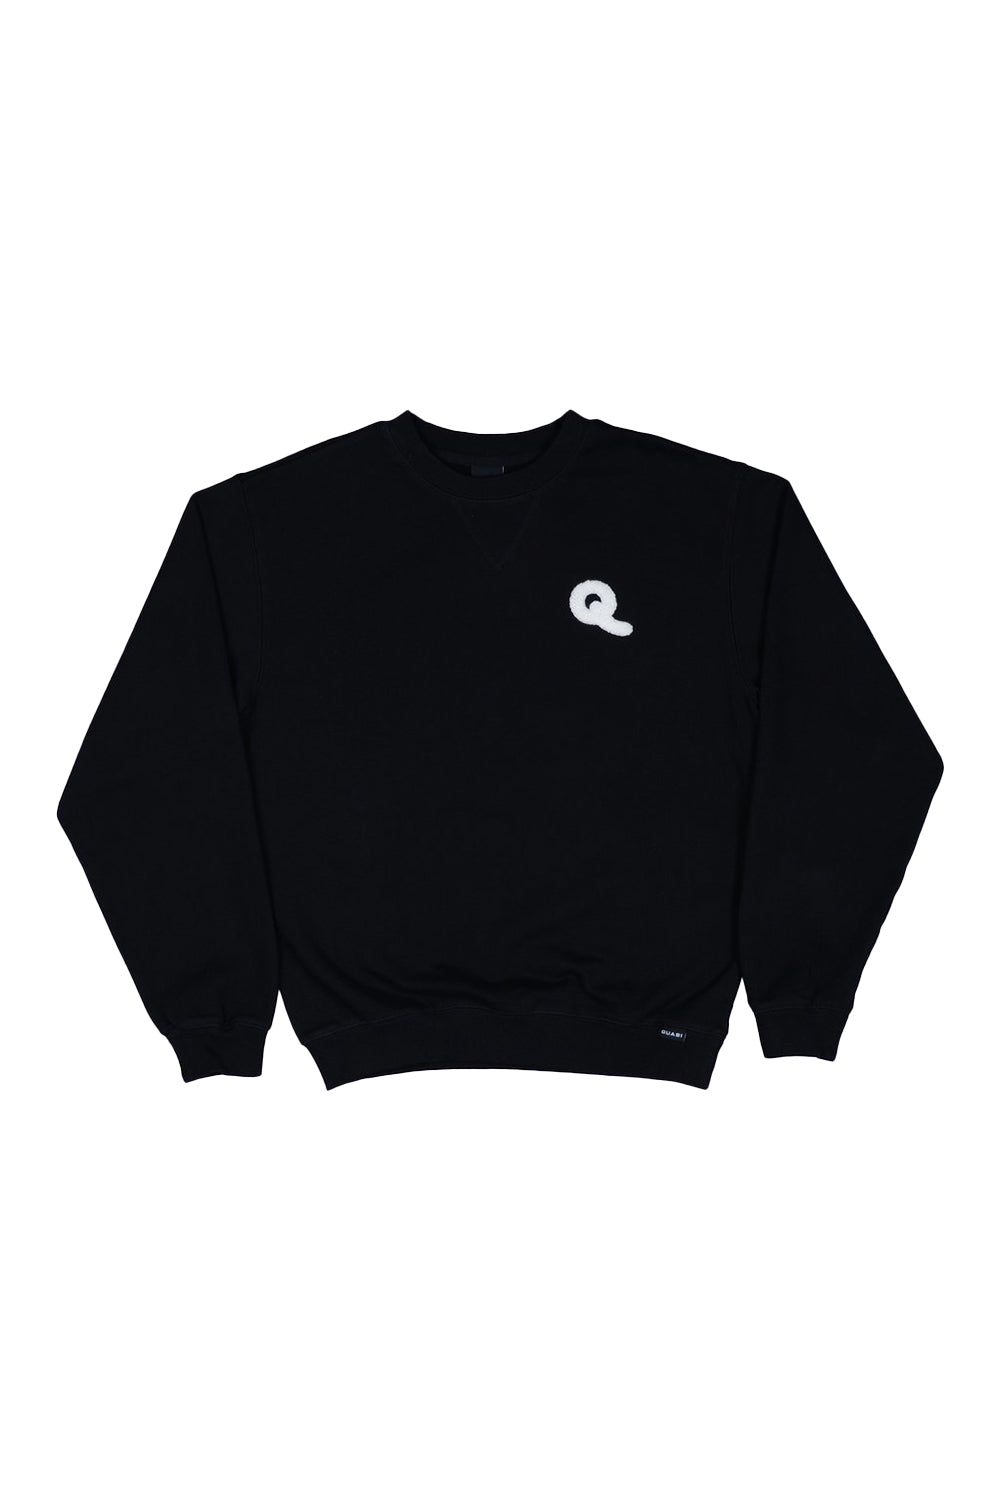 Quasi Skateboards | Quasi Q Crew Sweater